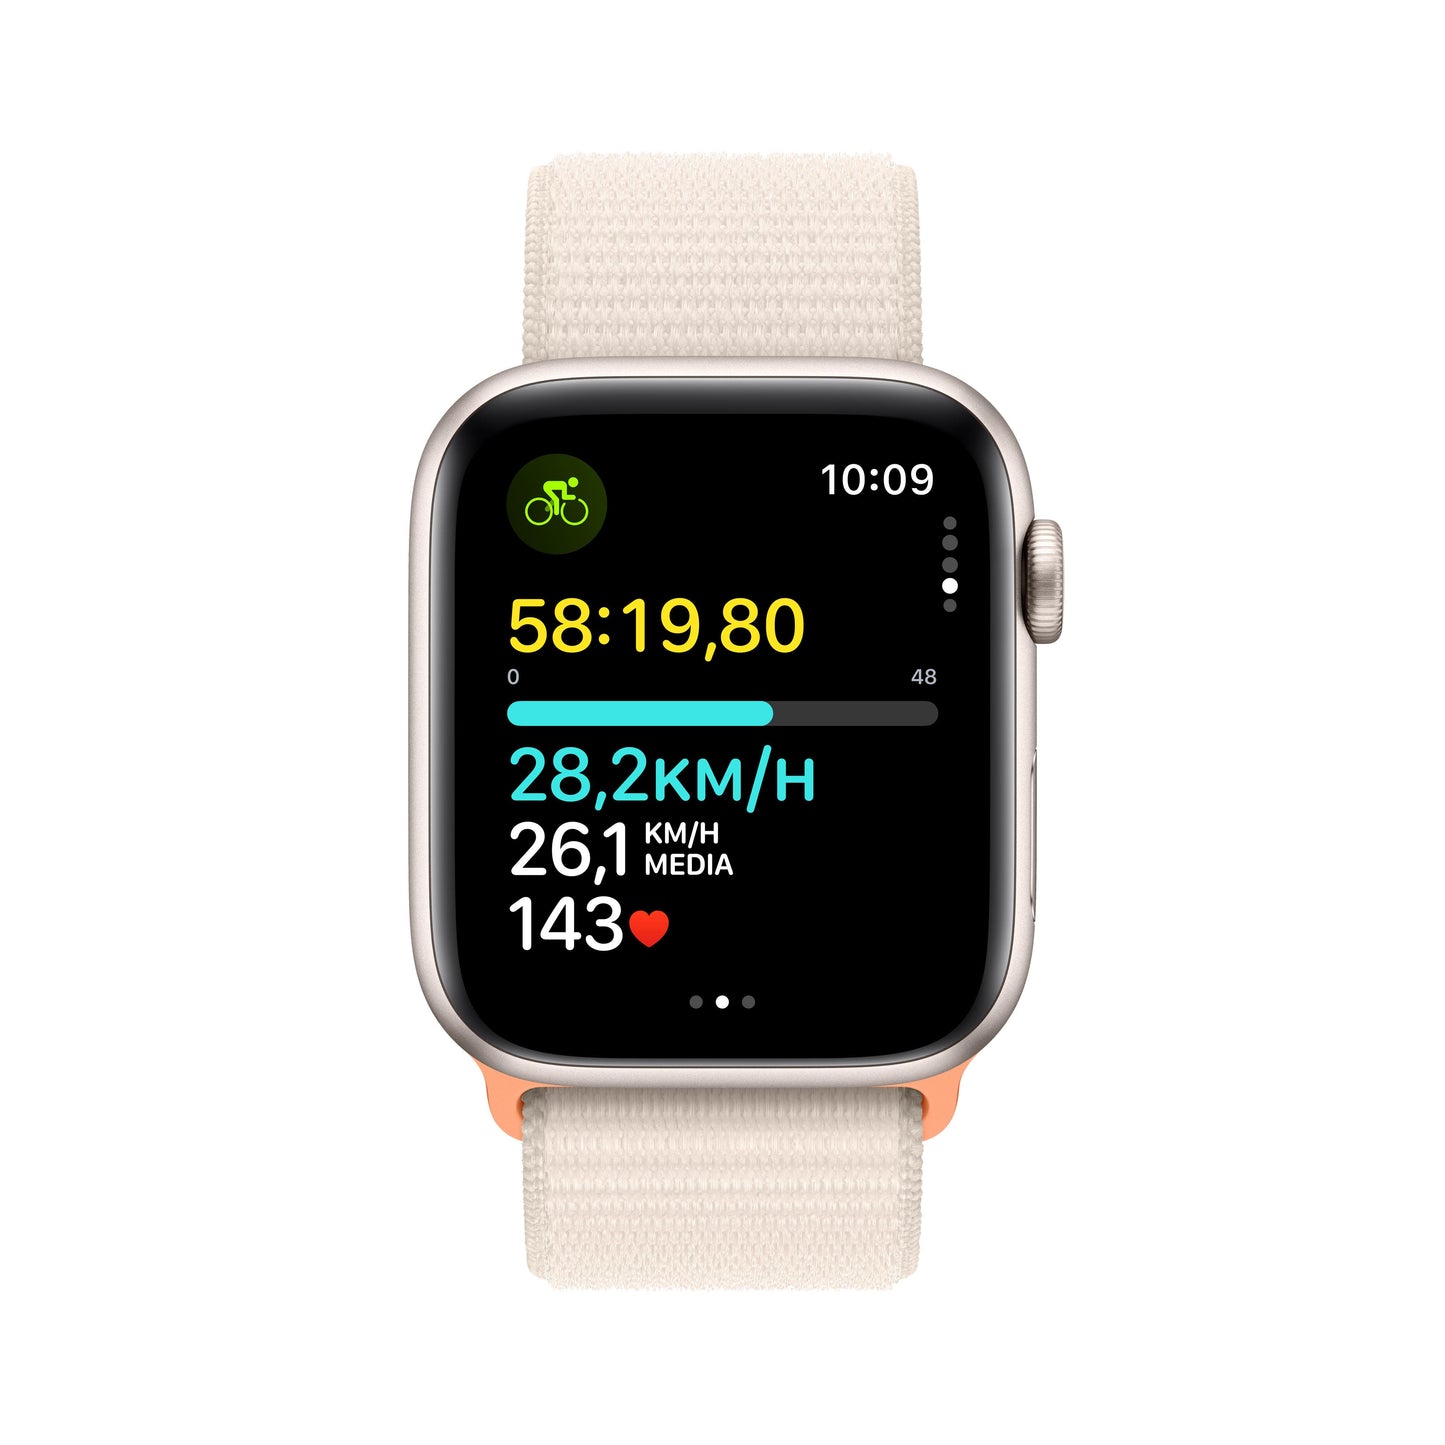 Apple Watch SE (GPS) - Caja de aluminio en blanco estrella de 44 mm - Correa Loop deportiva blanco estrella